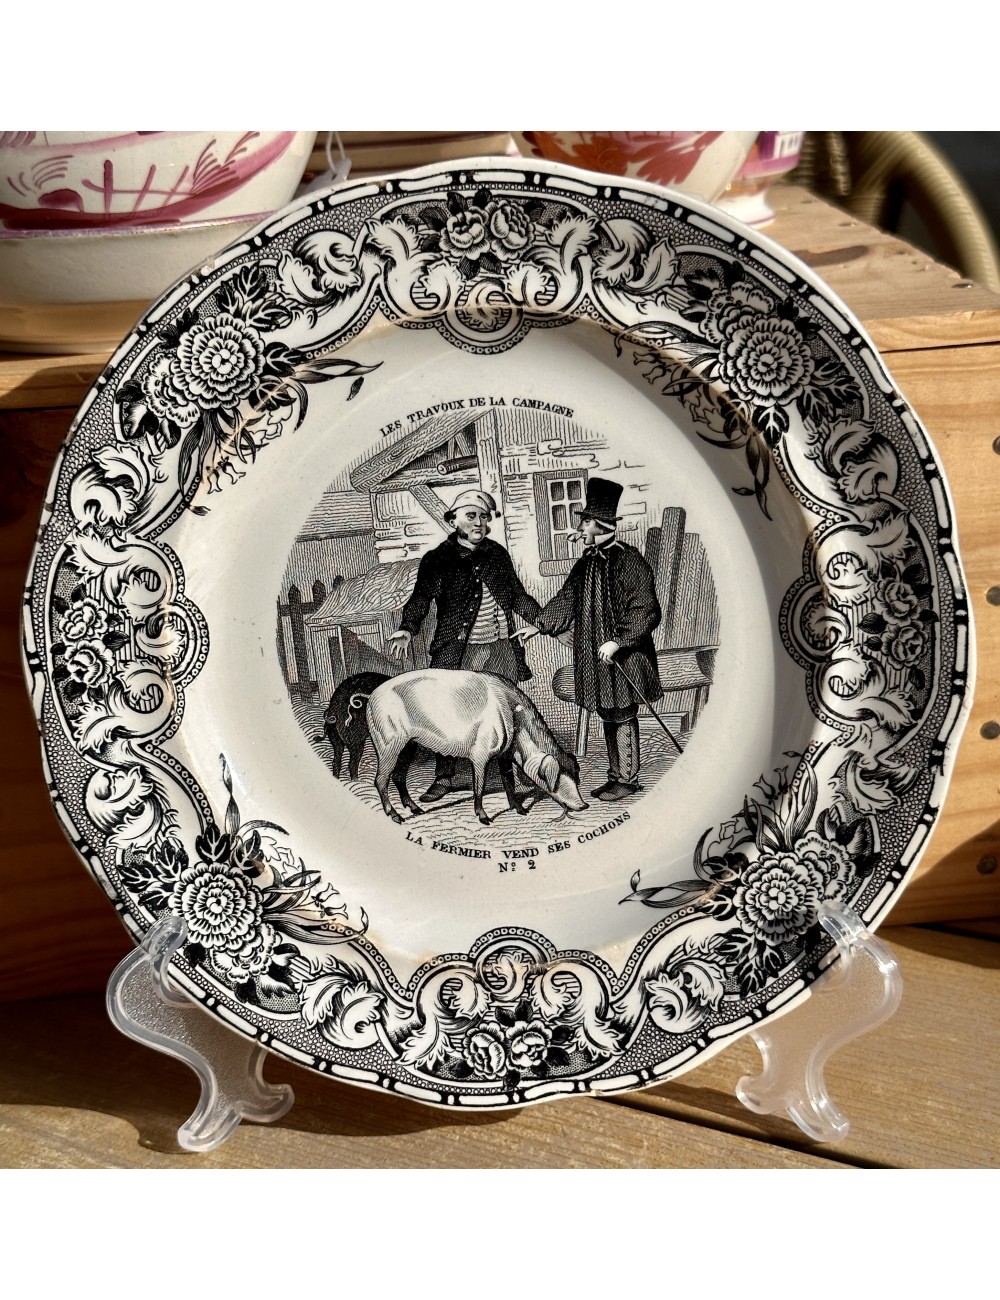 Decorative plate / Dessert plate - Gien - Geoffroy et Cie - décor in black and white - No. 2 La Fermier....